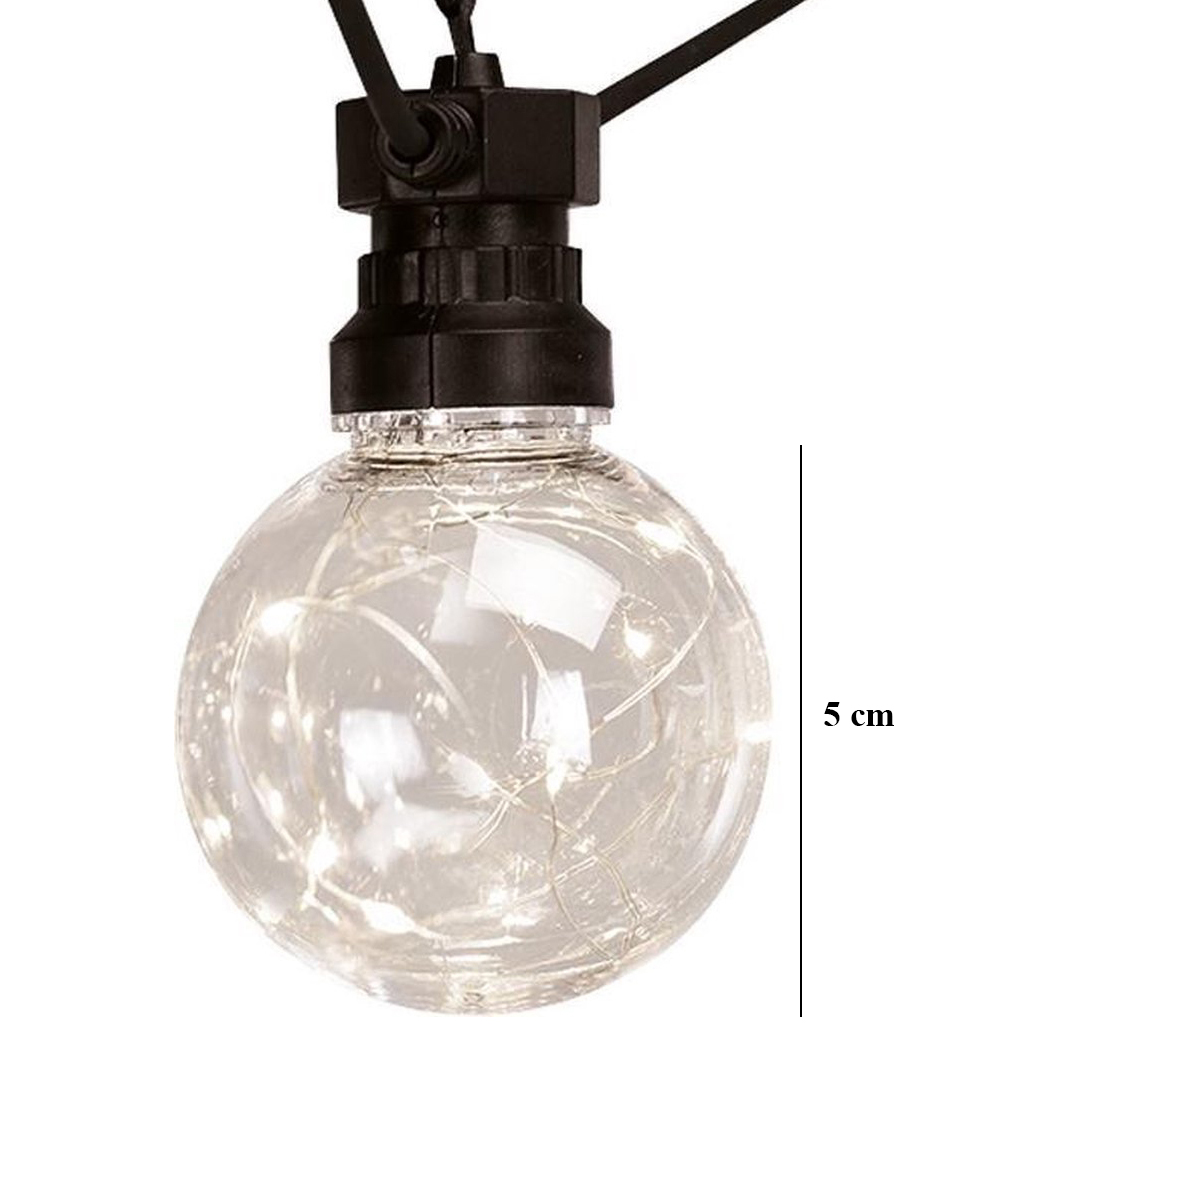 Lichtsnoer Binnen en Buiten verlichting (2x) -  Feestverlichting 50Led  - Warm Wit -  7.5 meter lengte  - 10 Lampjes 